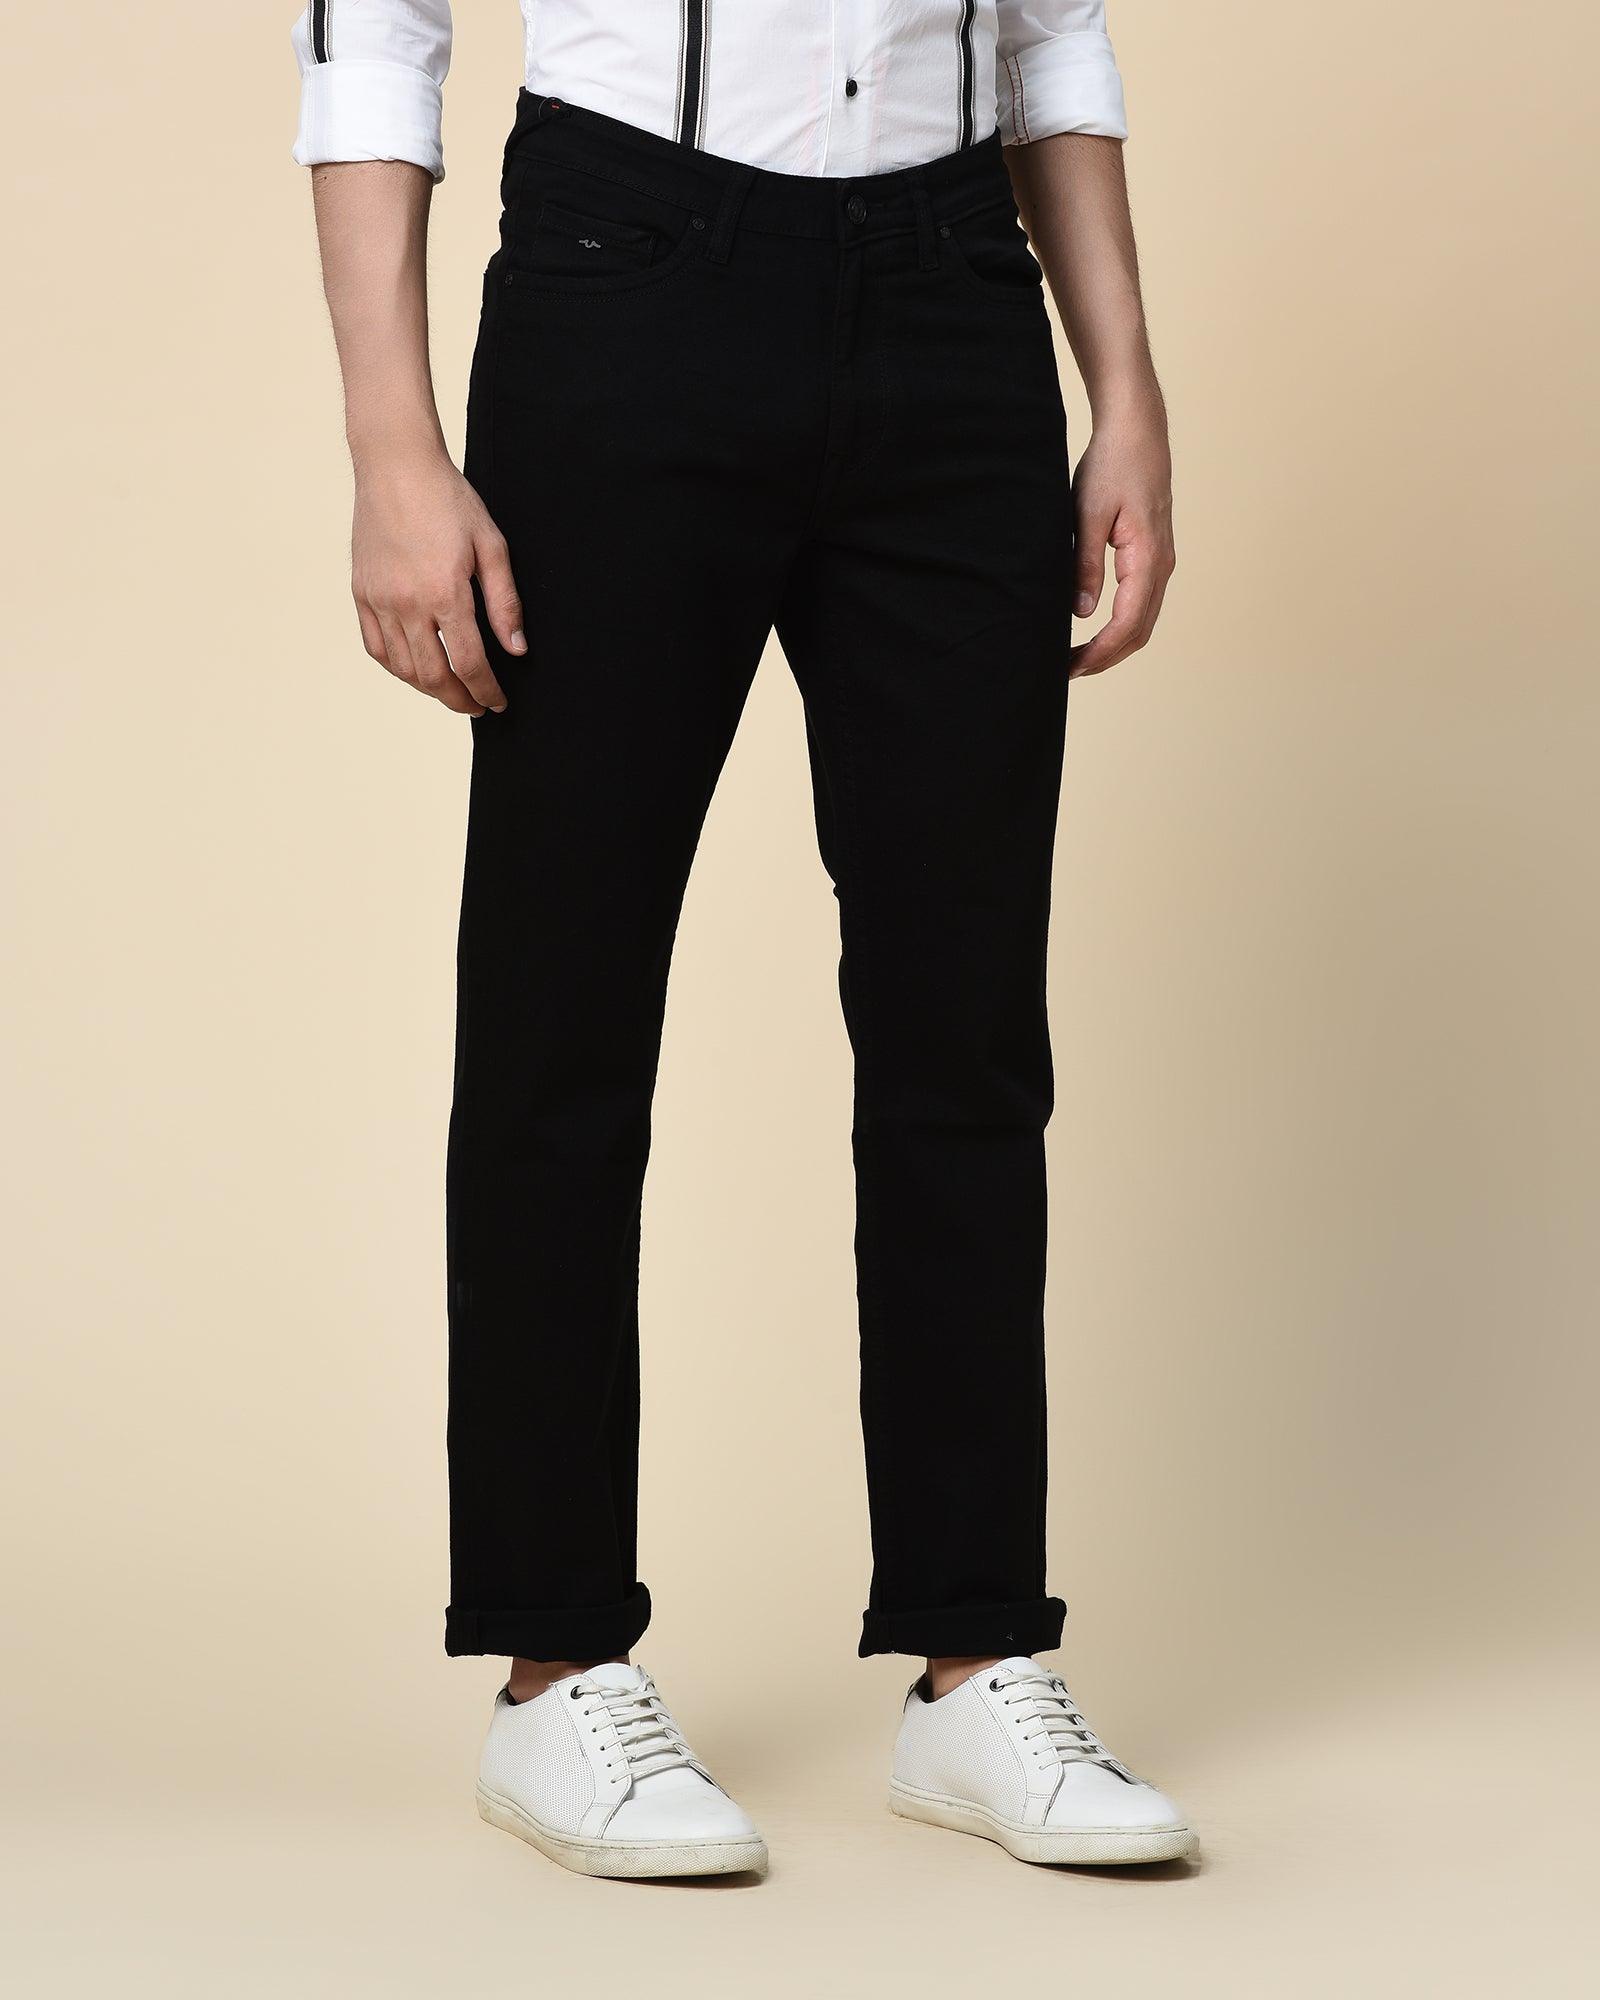 Laze FIt FIt Black Jeans - Jacob